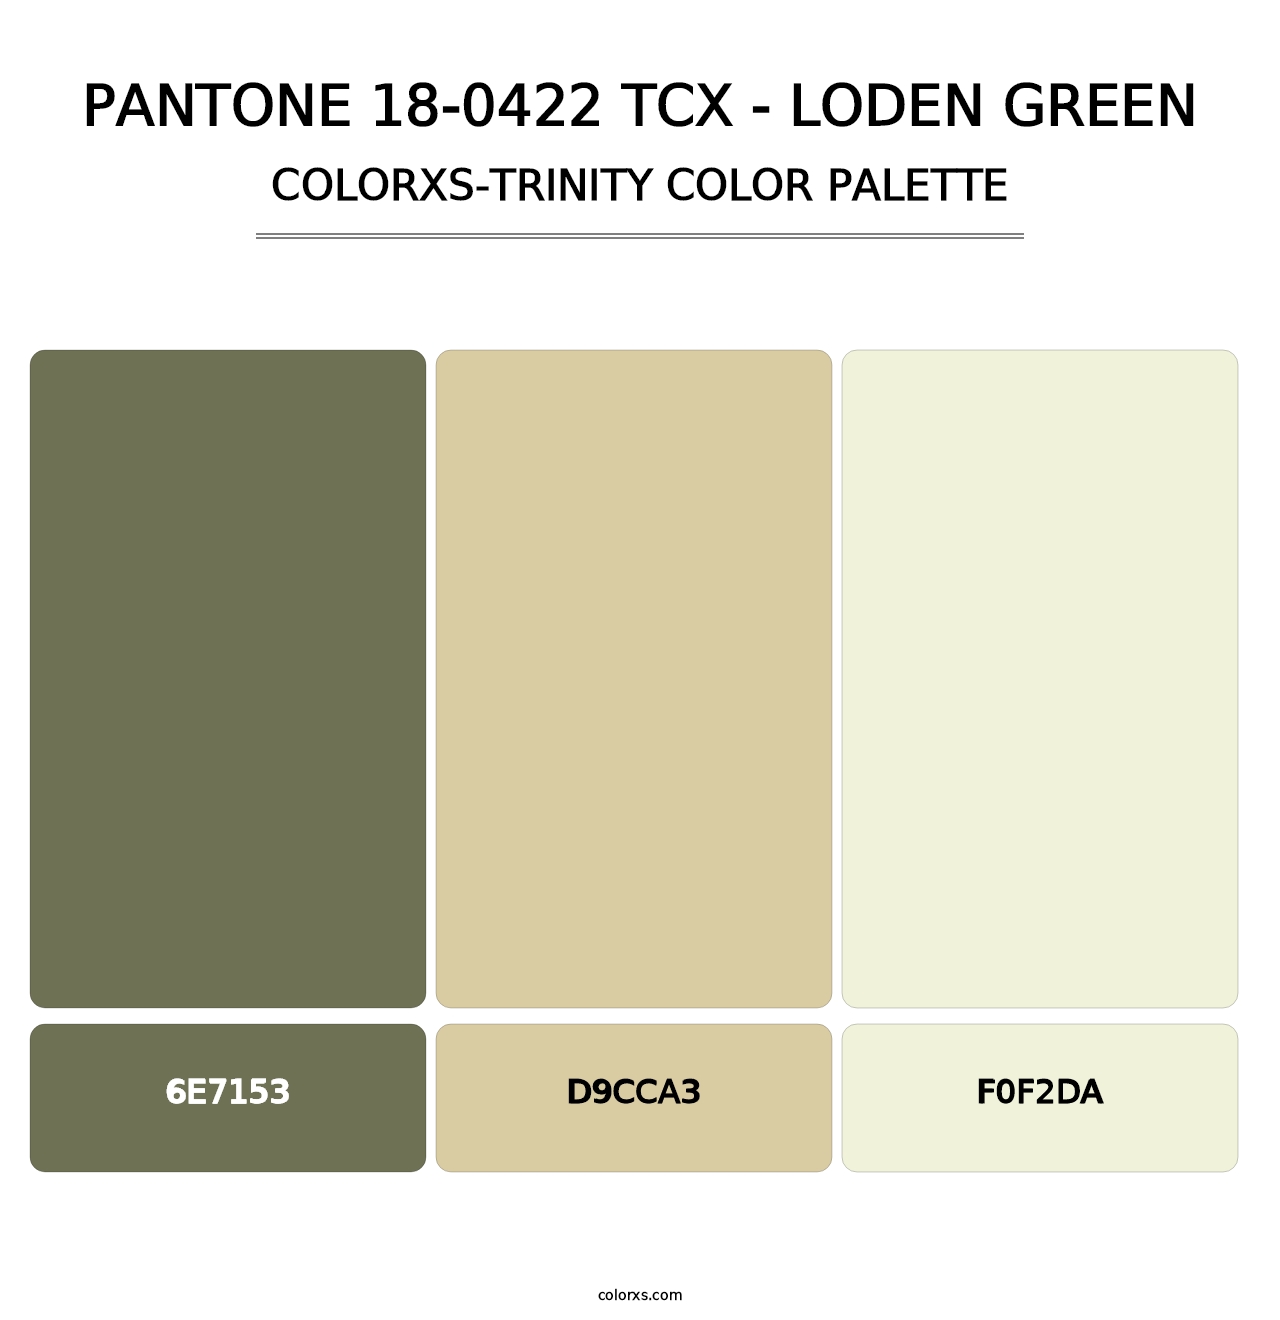 PANTONE 18-0422 TCX - Loden Green - Colorxs Trinity Palette